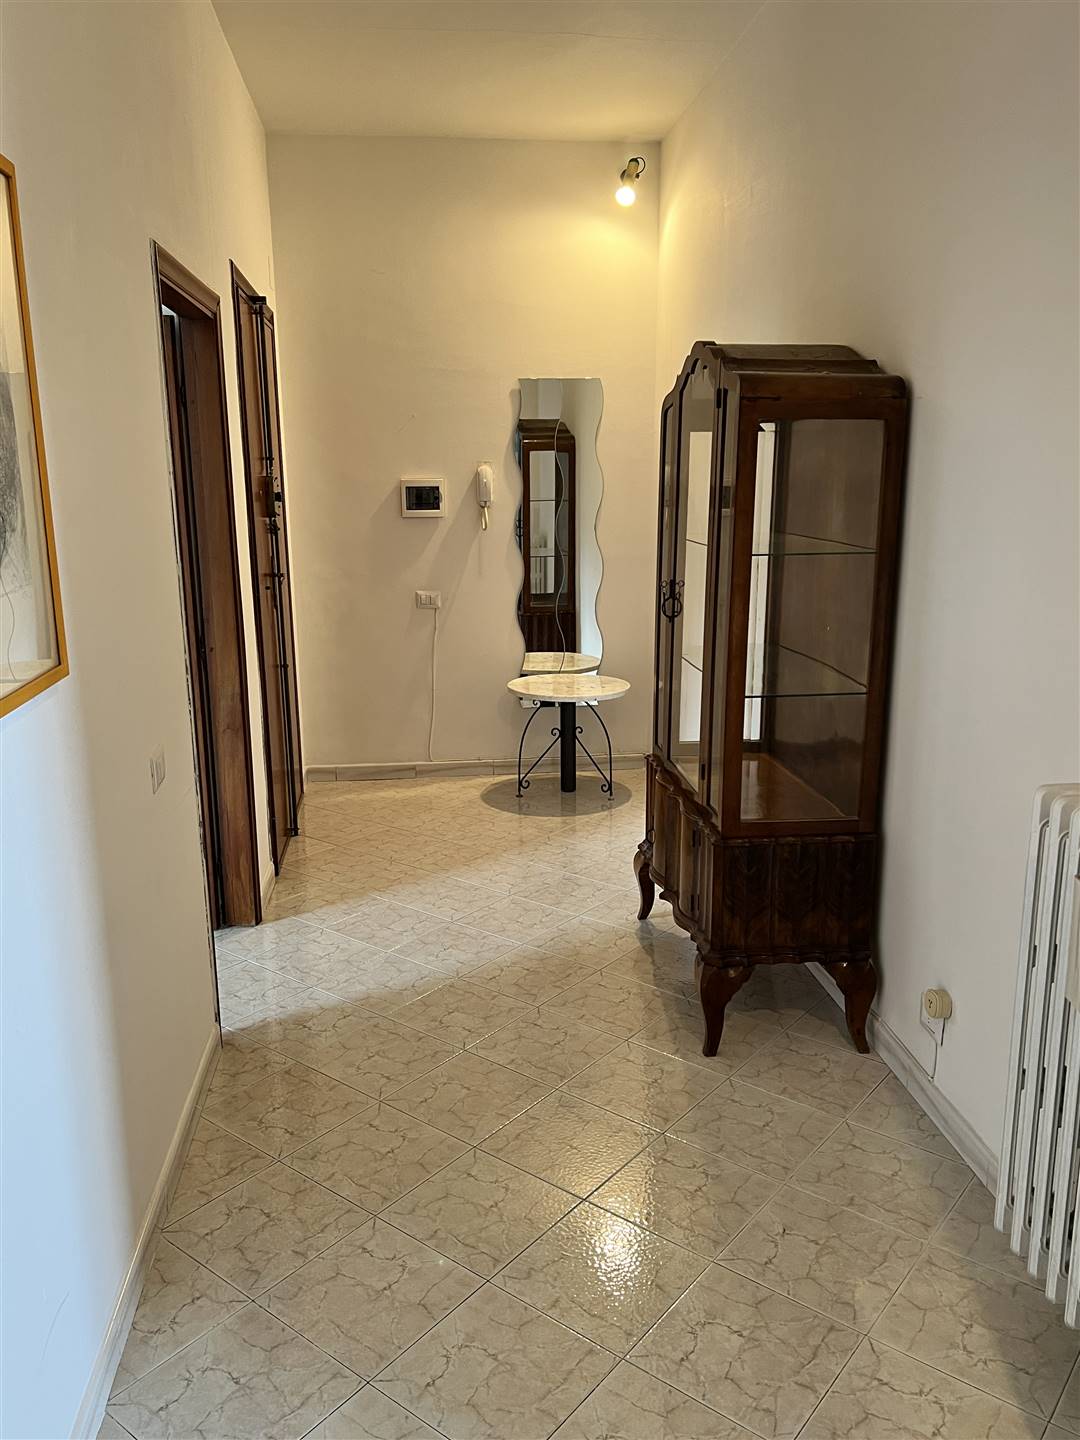 Appartamento in vendita a Figline e Incisa Valdarno, 4 locali, zona Località: VIA PETRARCA, prezzo € 140.000 | PortaleAgenzieImmobiliari.it